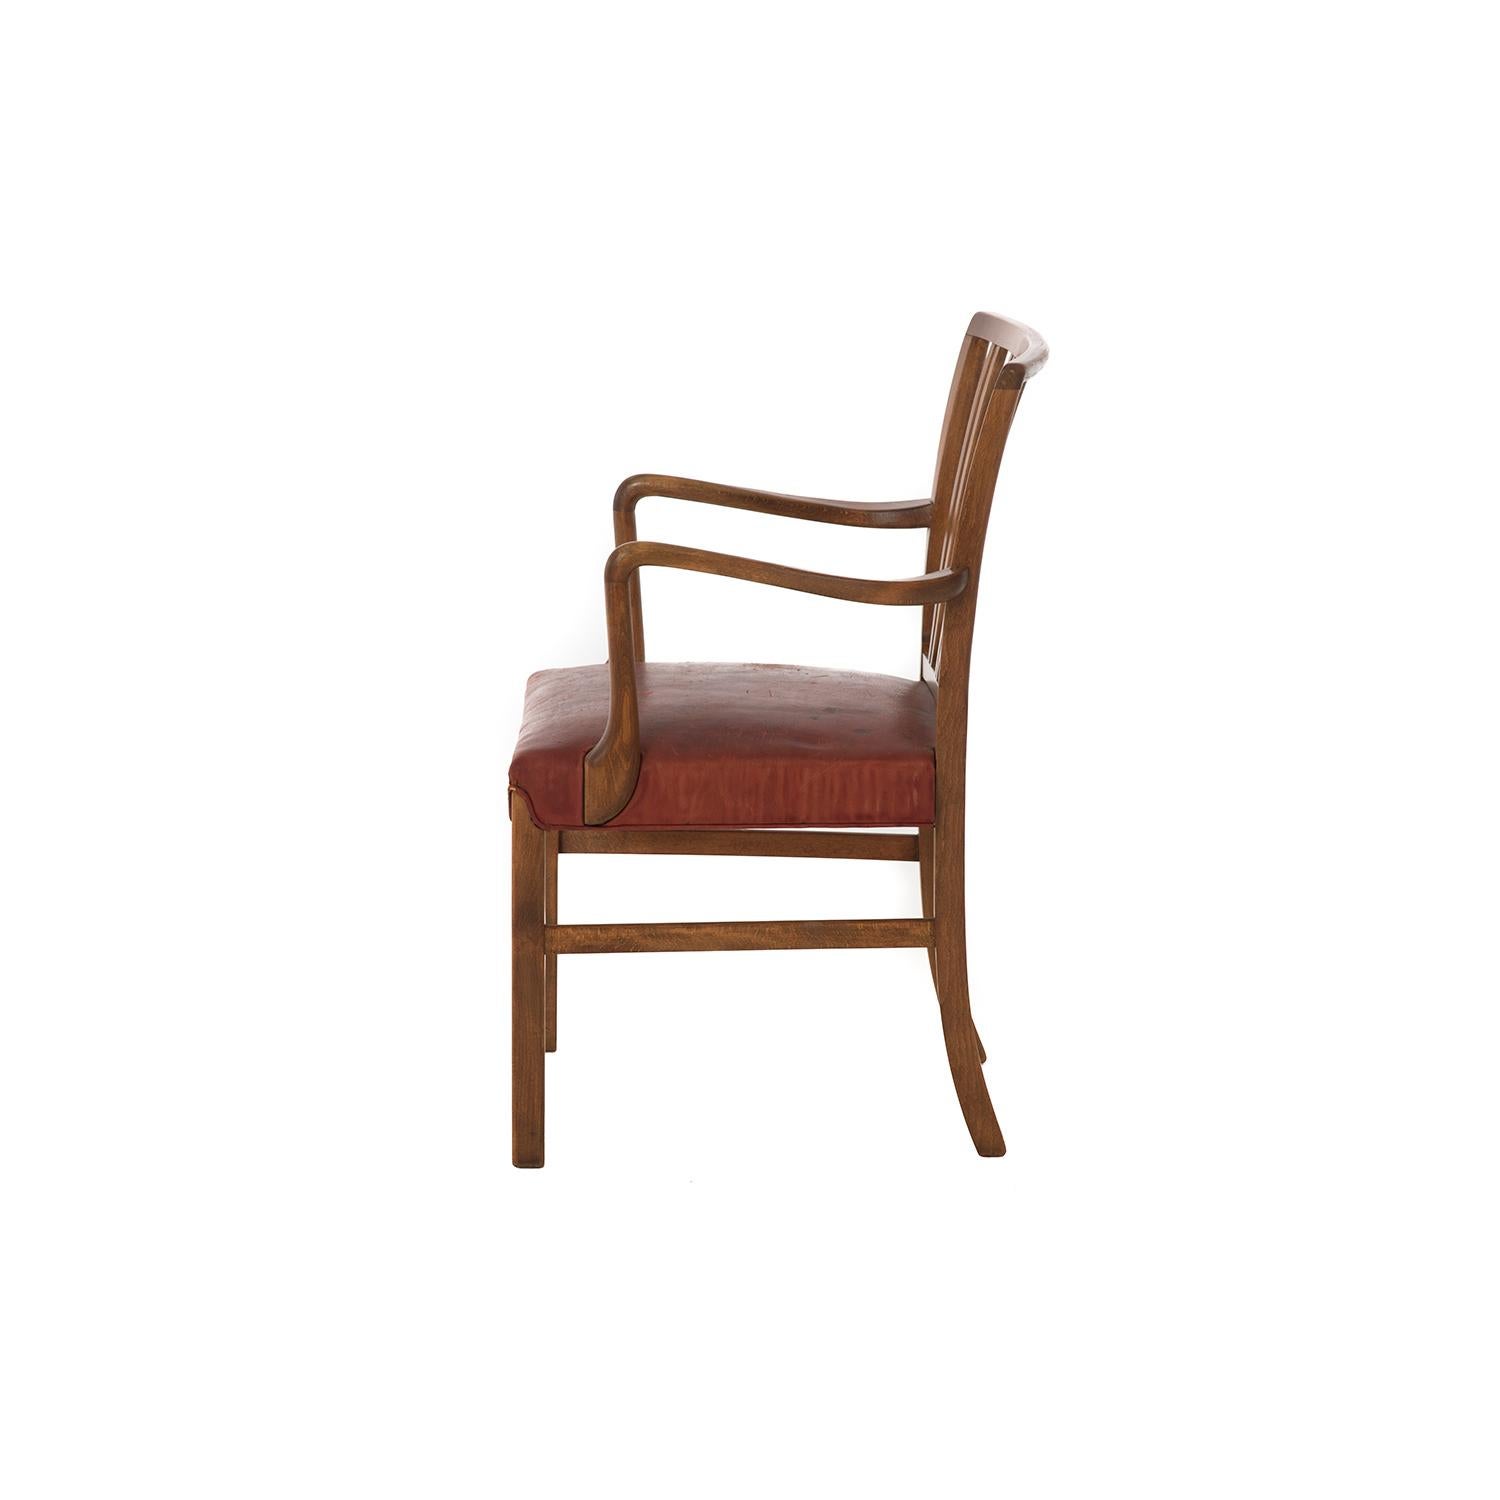 Transitional Danish Modern Occasional Chair by Ole Wanscher (Skandinavische Moderne)